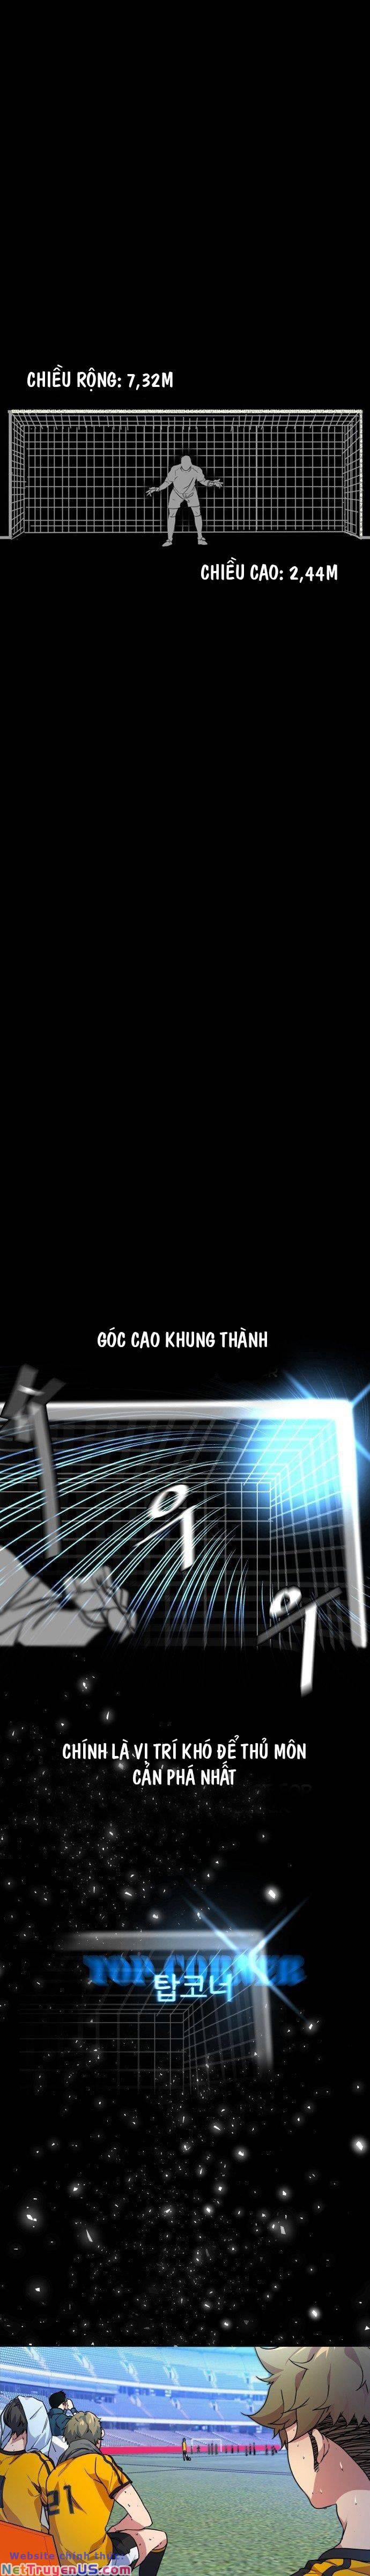 Góc Cao Khung Thành - Trang 2